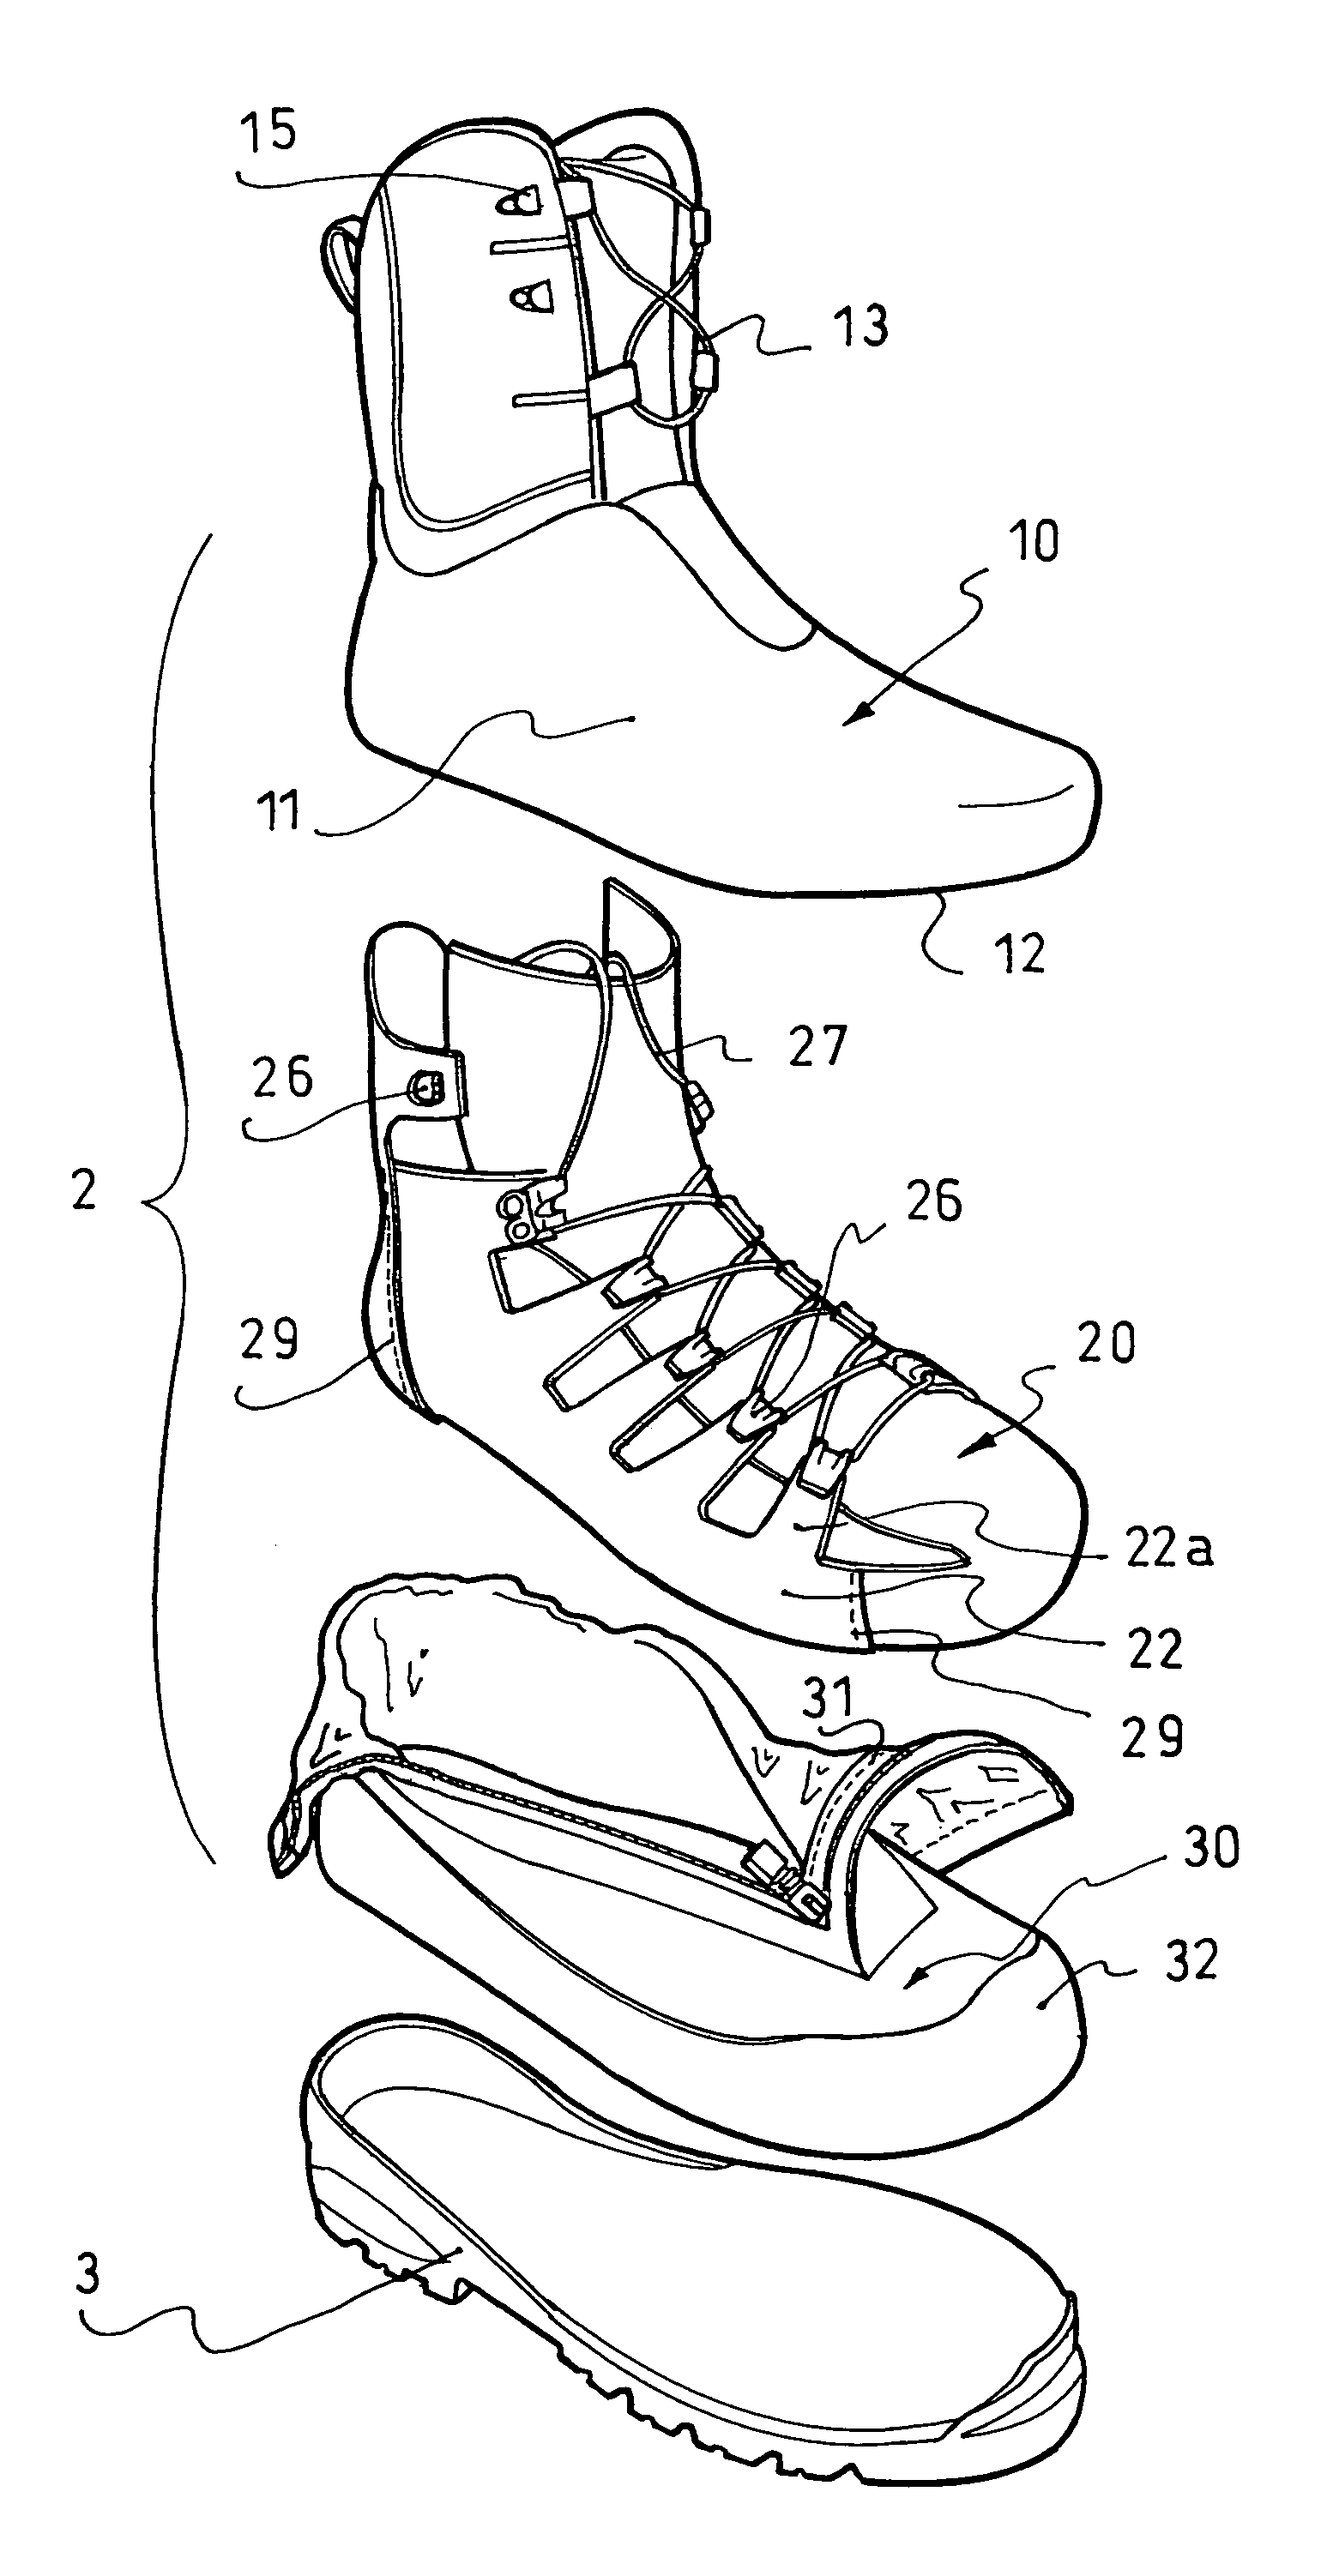 Article of footwear